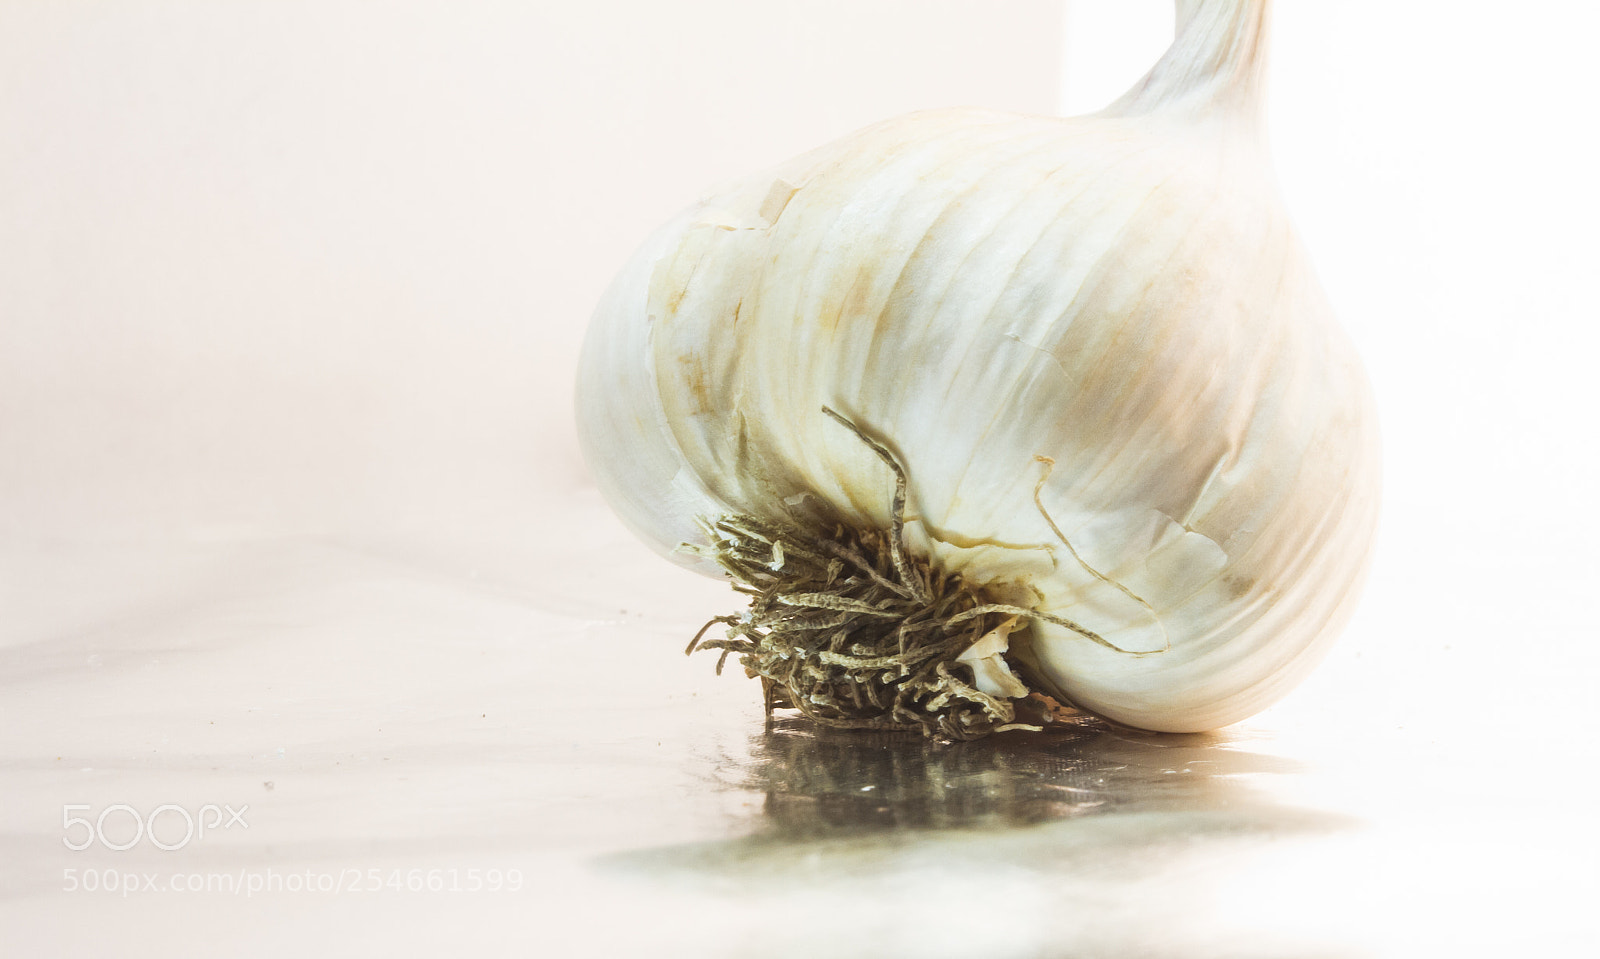 Canon EOS 7D sample photo. Garlic clove photography